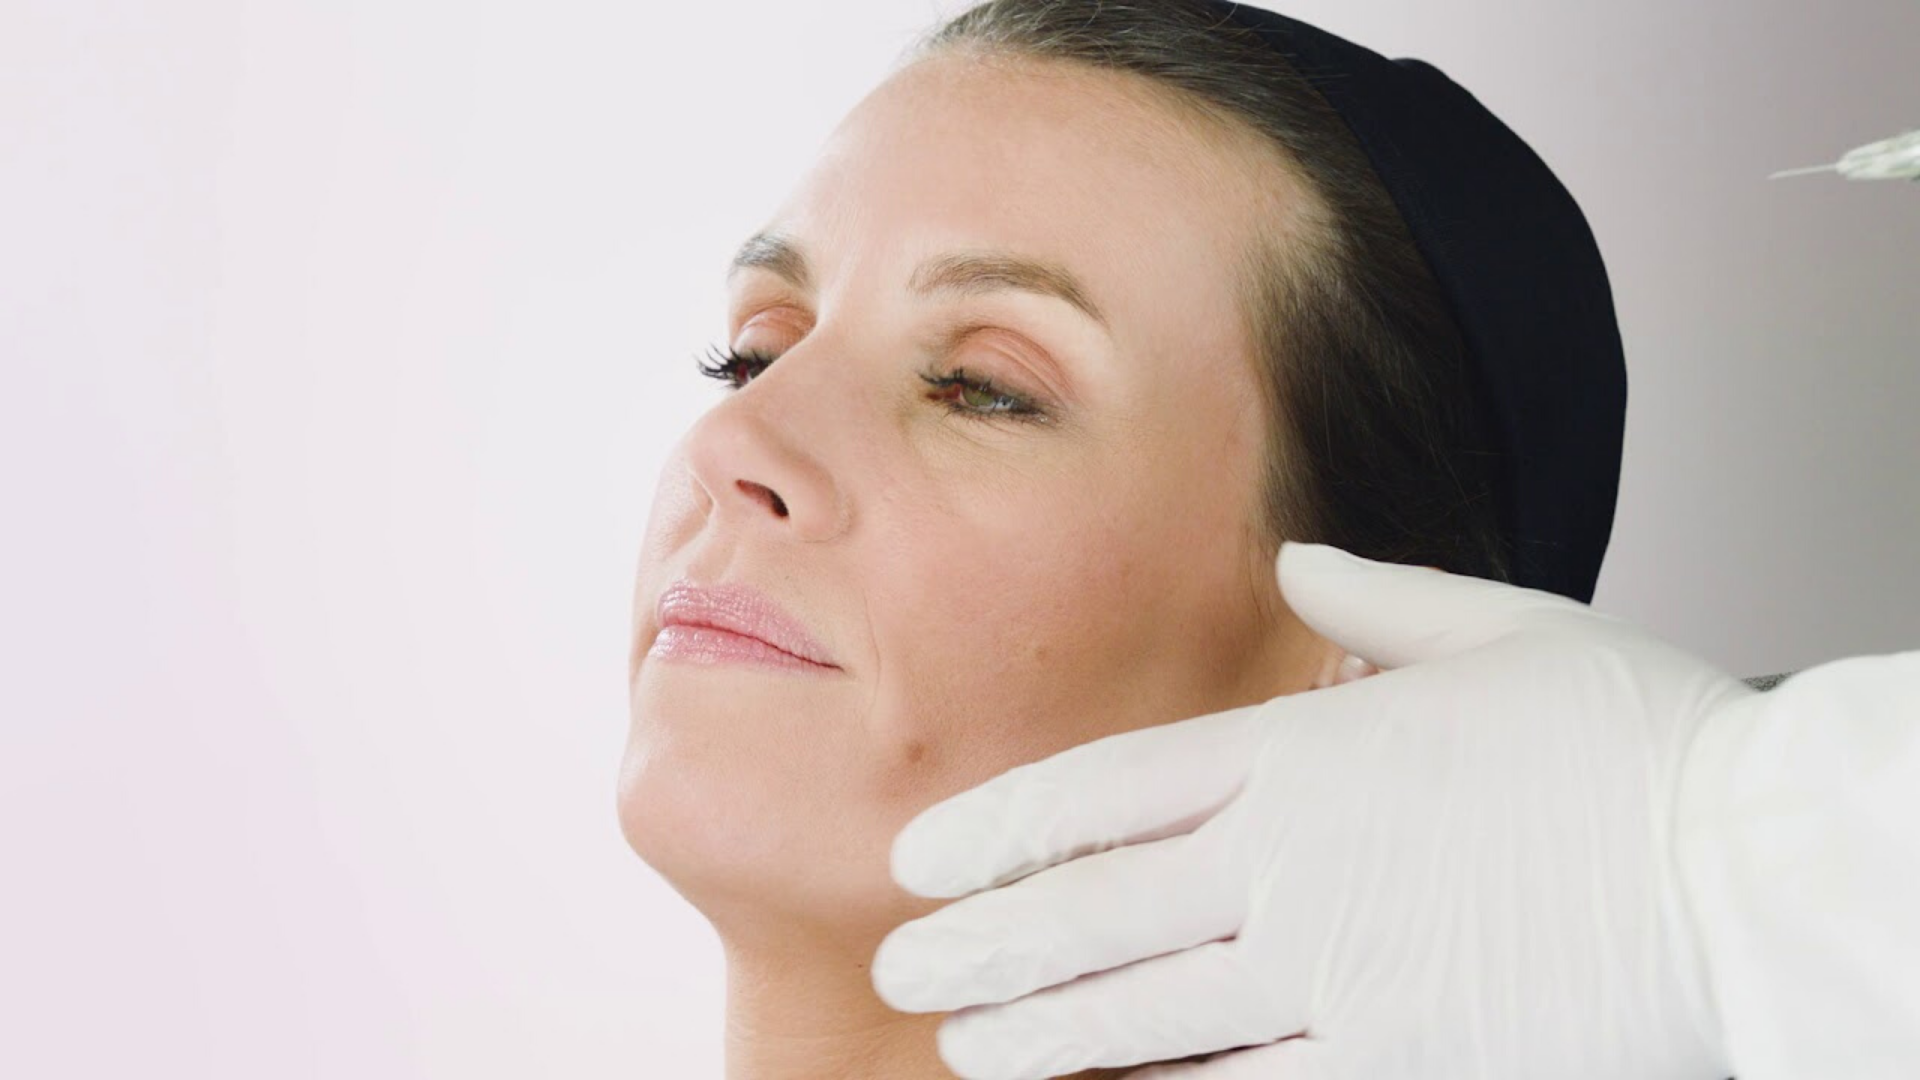 Cliquez ici pour découvrir comment SCHOTT TOPPAC® cosmetic offre une série d’avantages pour les applications cosmétiques et médicales